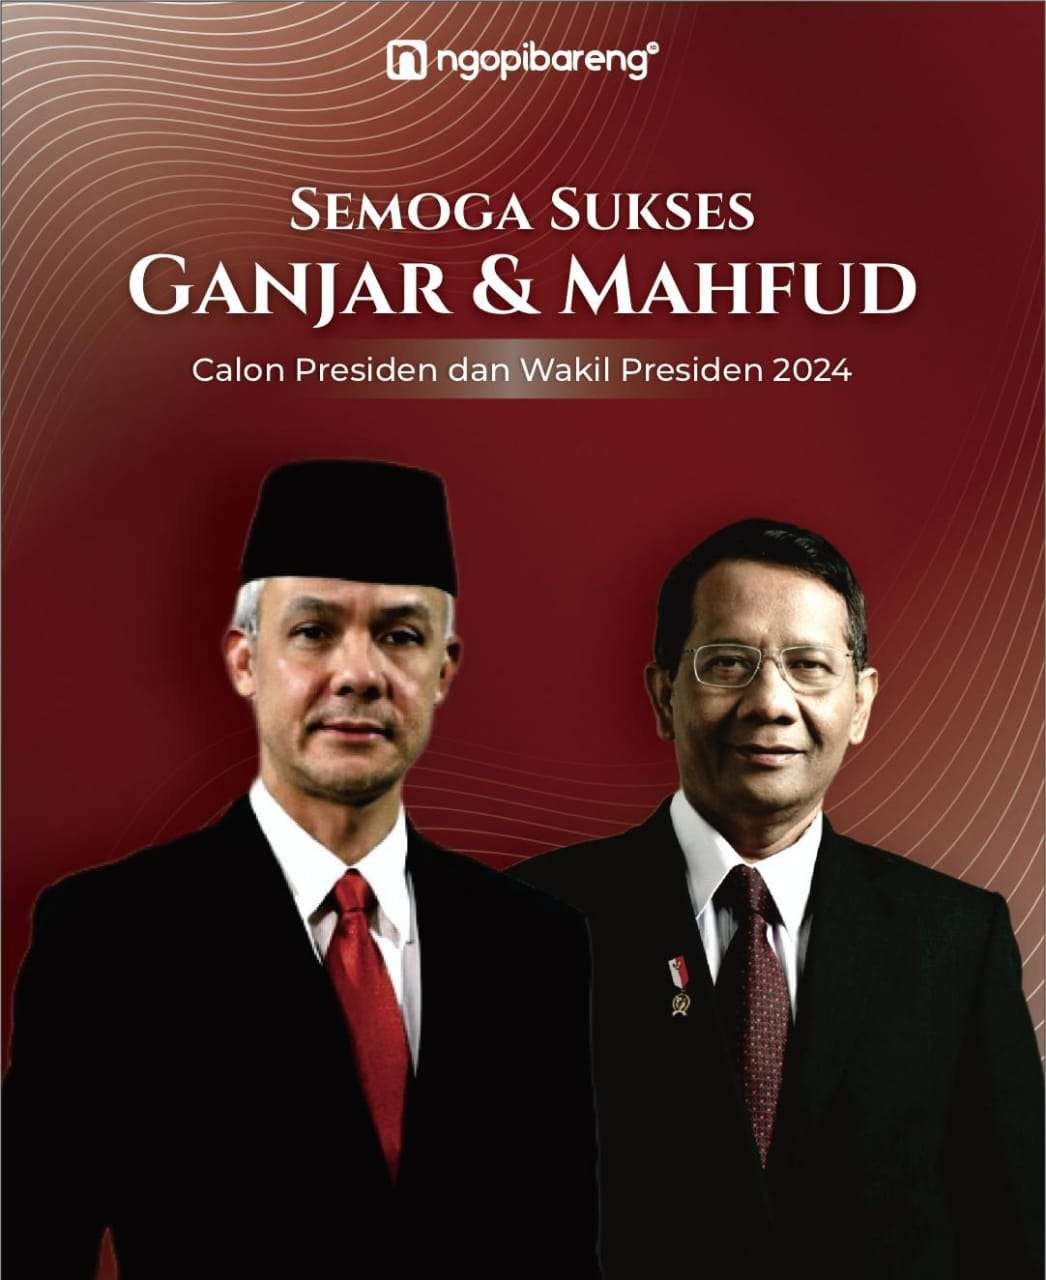 Ketua Umum PDIP, Megawati Soekarnoputri resmi umumkan Mahfud MD sebagai pendamping Ganjar Pranowo di Pilpres 2024. (Ilustrasi: Chandra Tri/Ngopibareng.id)